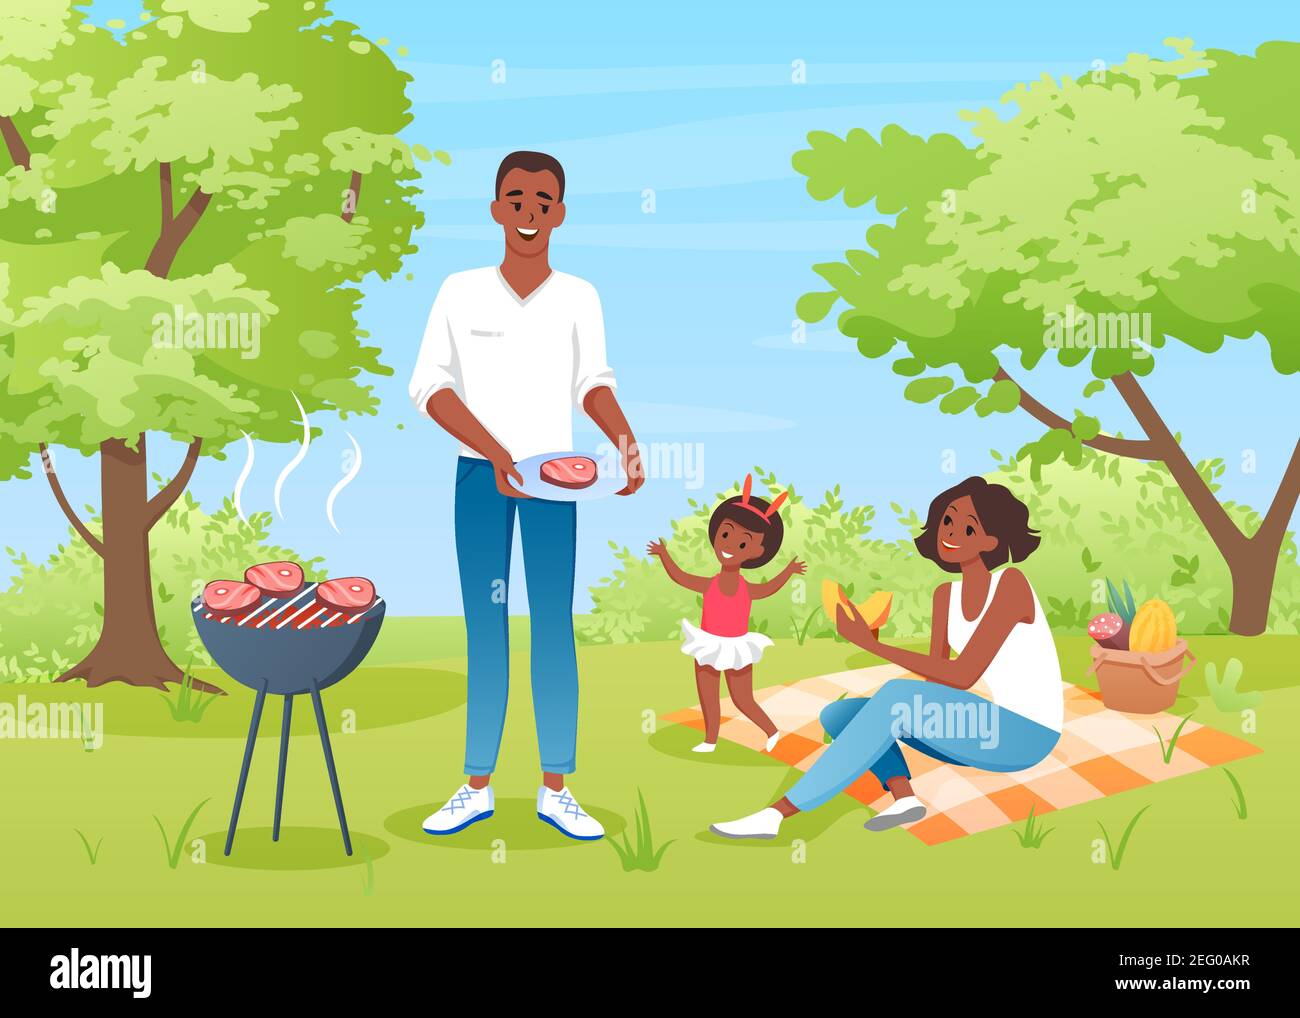 Glückliche Familie Menschen auf bbq Picknick, Mutter Vater und Mädchen Charaktere haben Spaß zusammen Stock Vektor